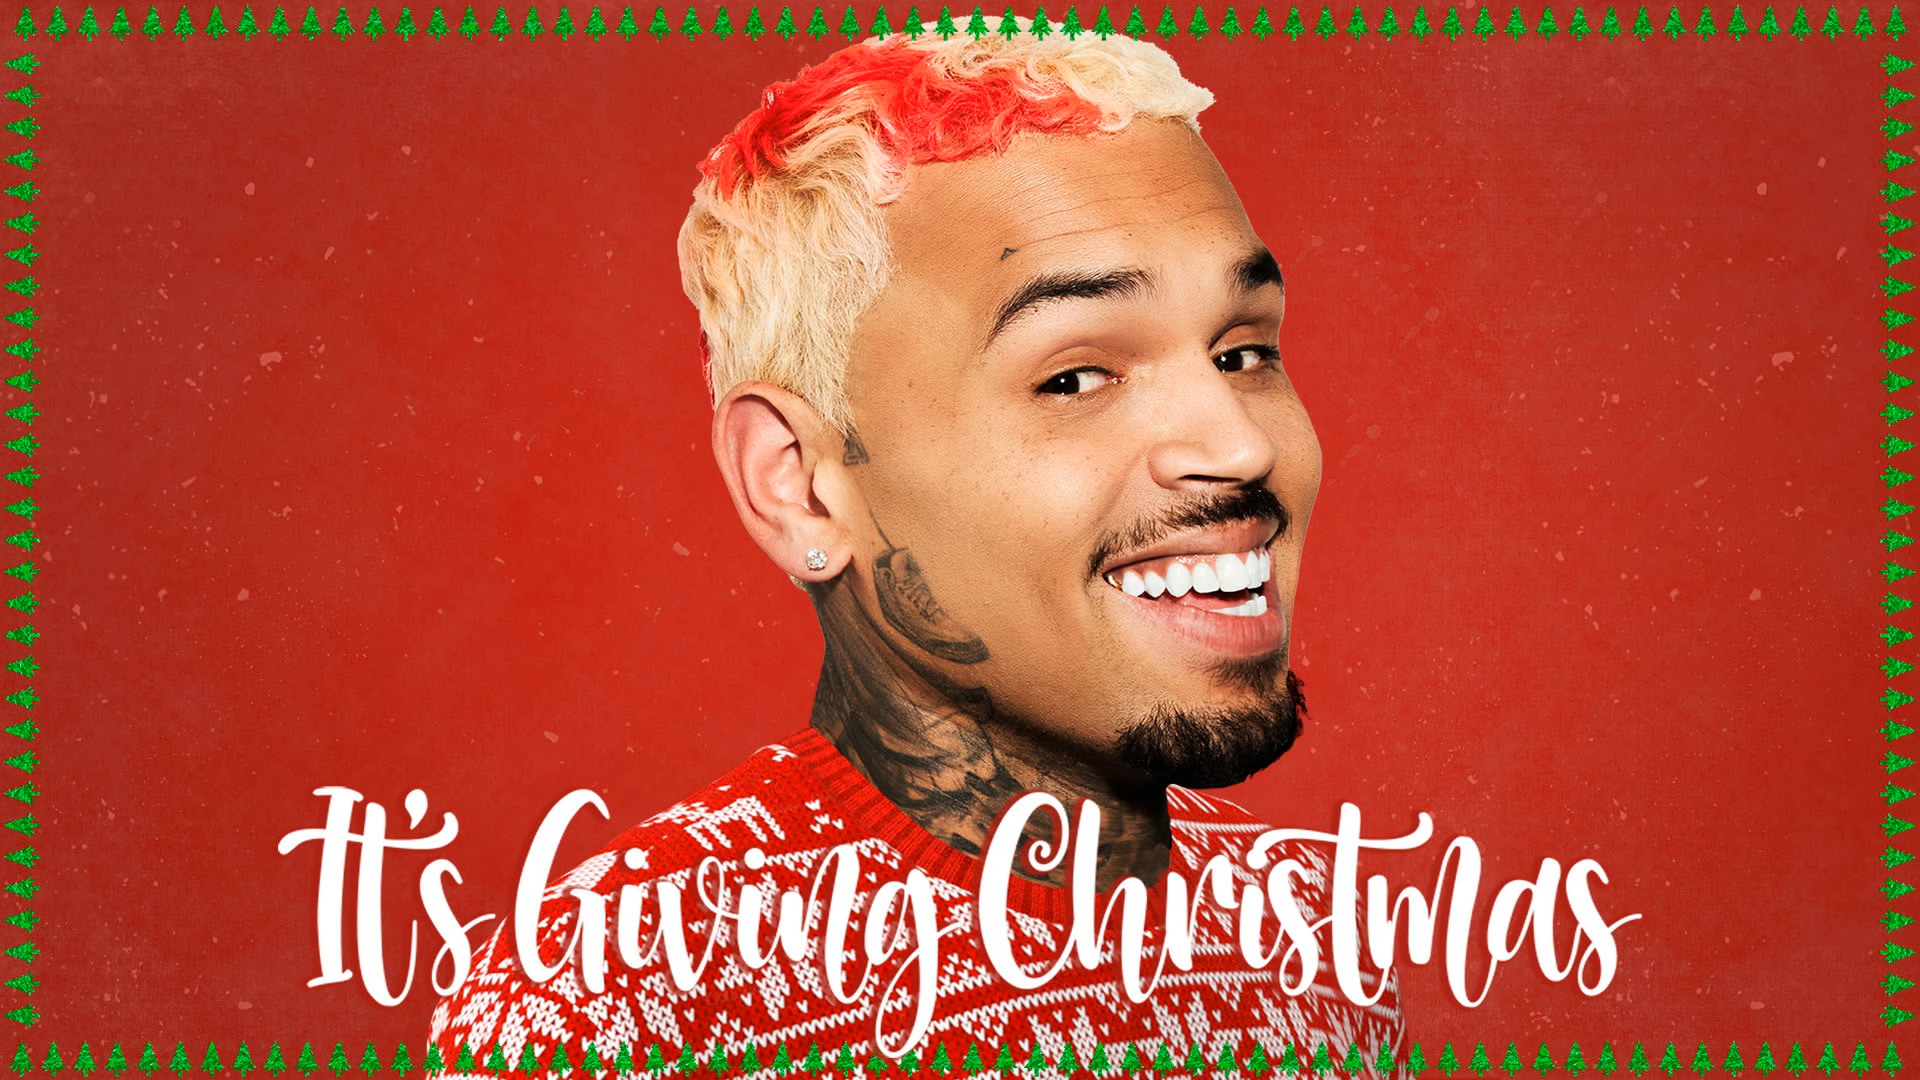 Chris Brown – It’s giving Christmas | Piesă nouă